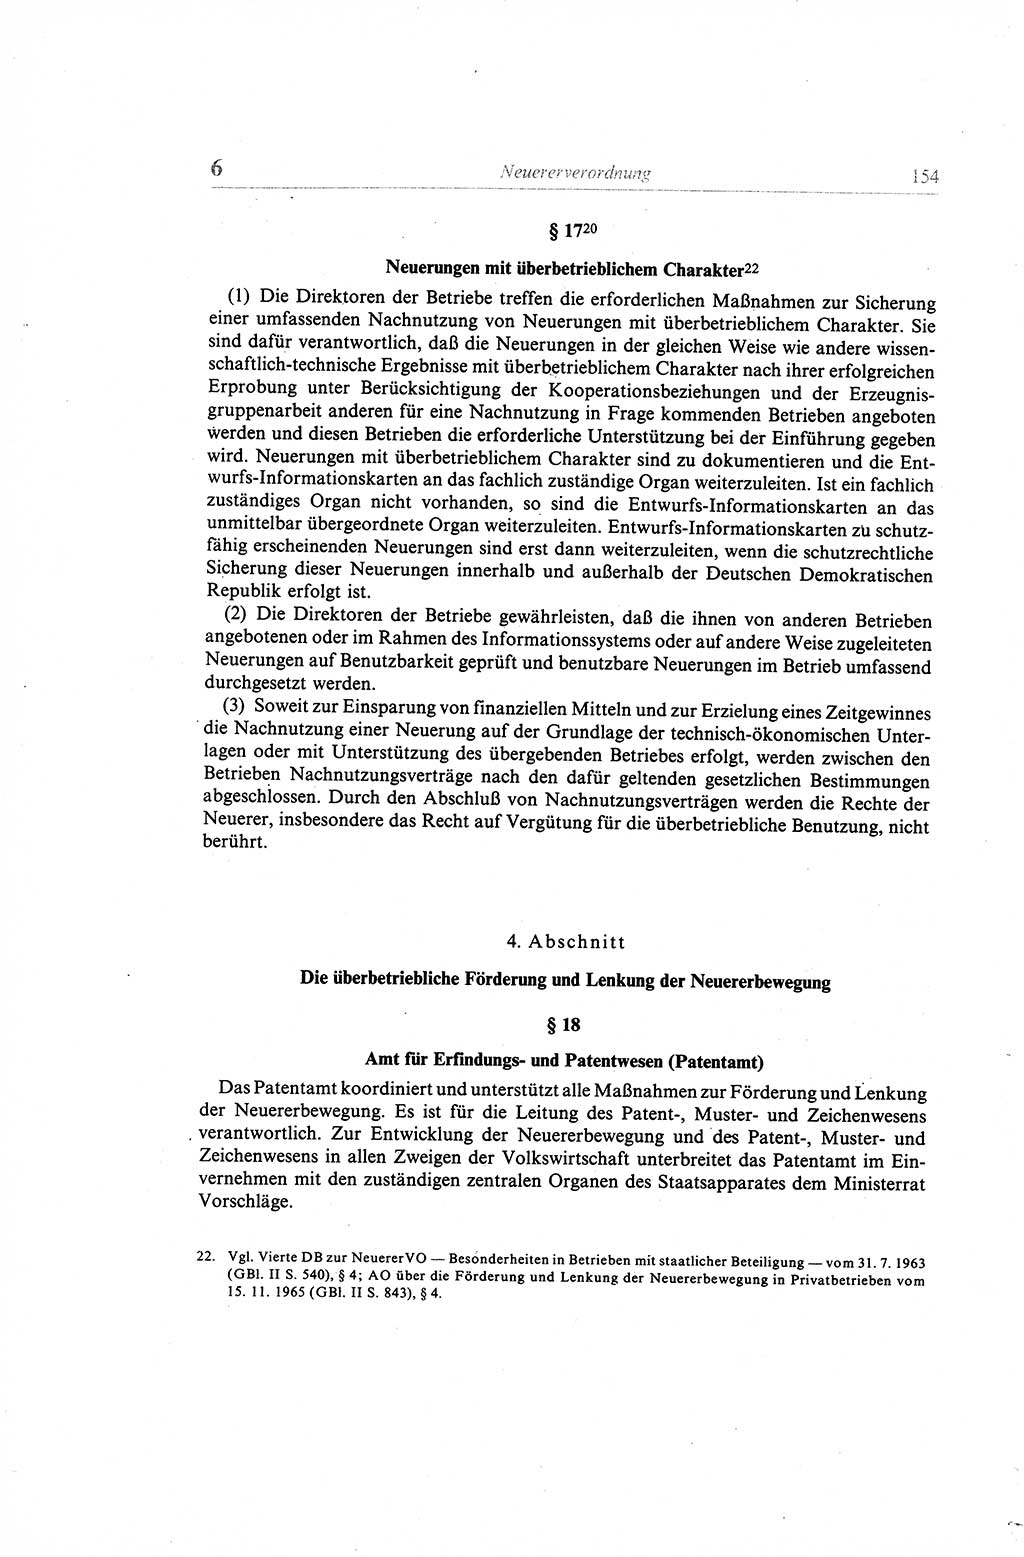 Gesetzbuch der Arbeit (GBA) und andere ausgewählte rechtliche Bestimmungen [Deutsche Demokratische Republik (DDR)] 1968, Seite 154 (GBA DDR 1968, S. 154)